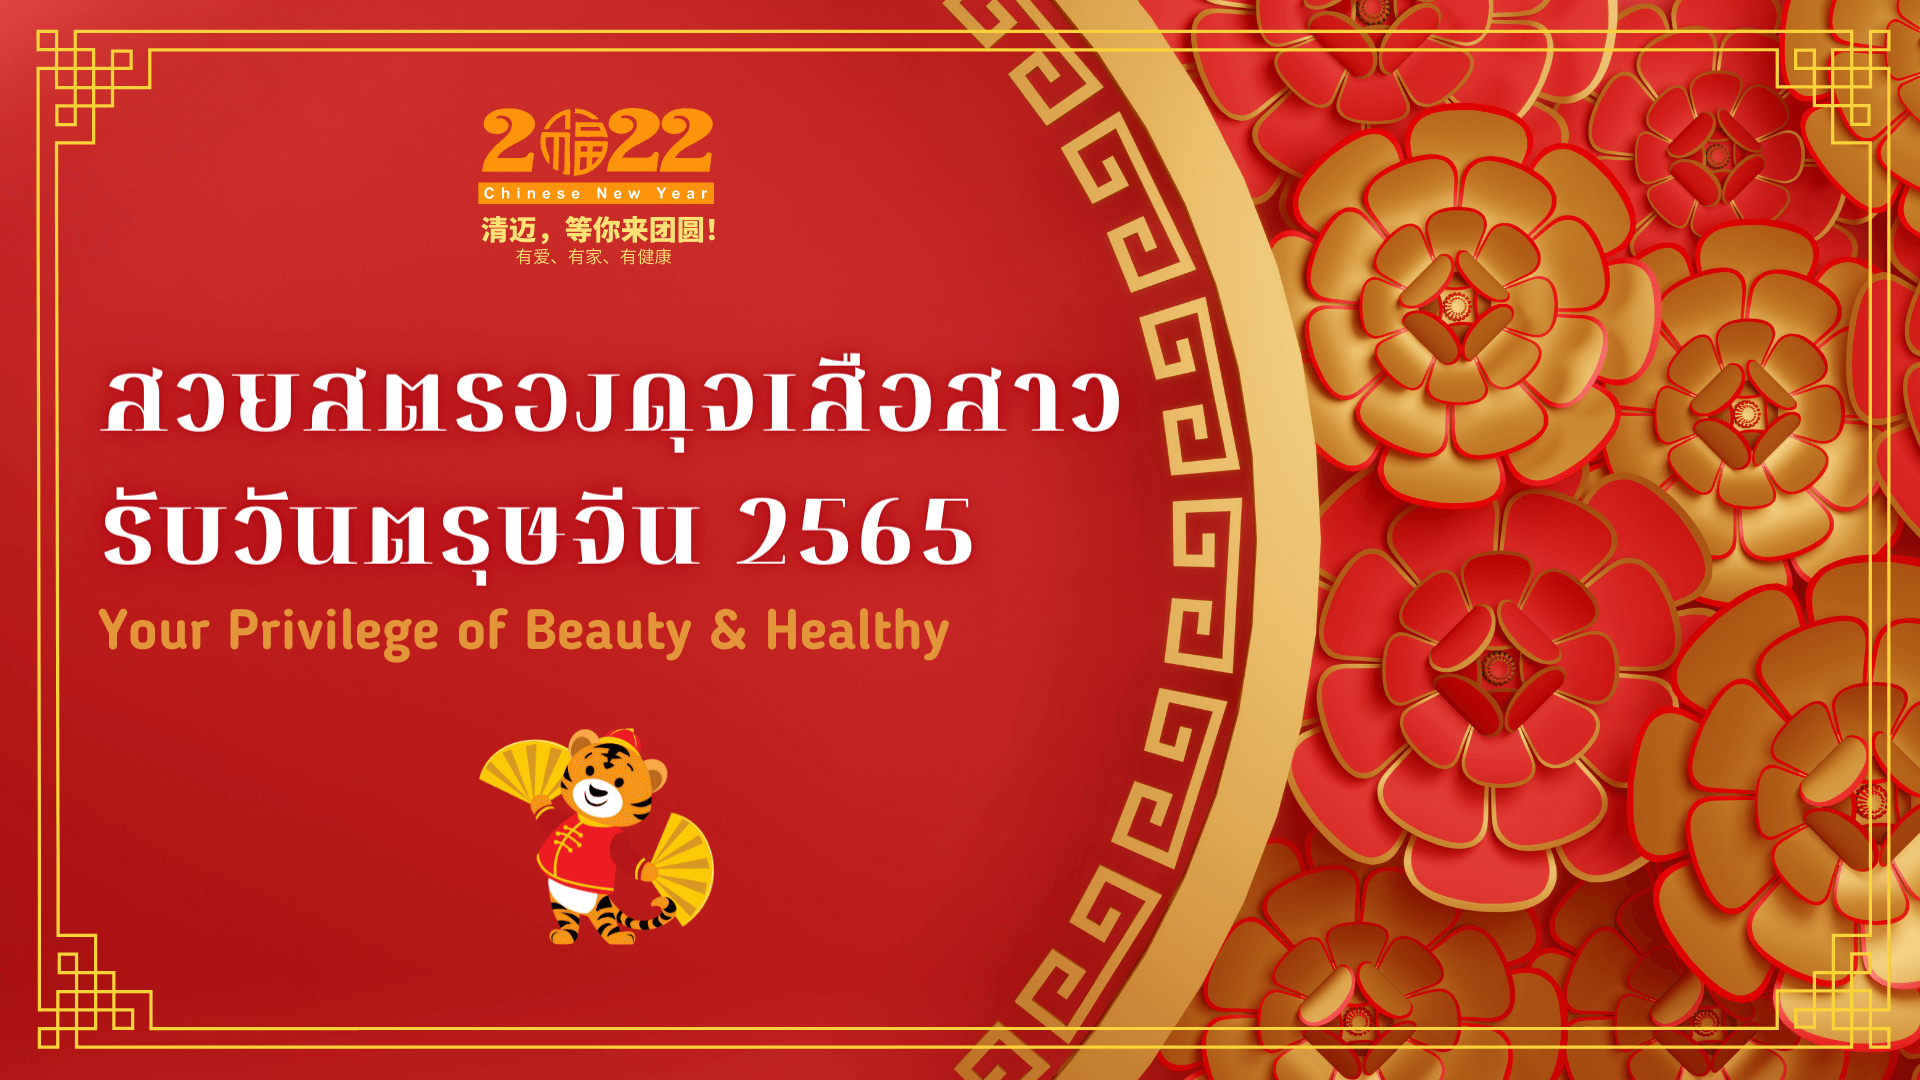 Chinese New Year Anbao 2022 - Bangkok Hospital Chiang Mai